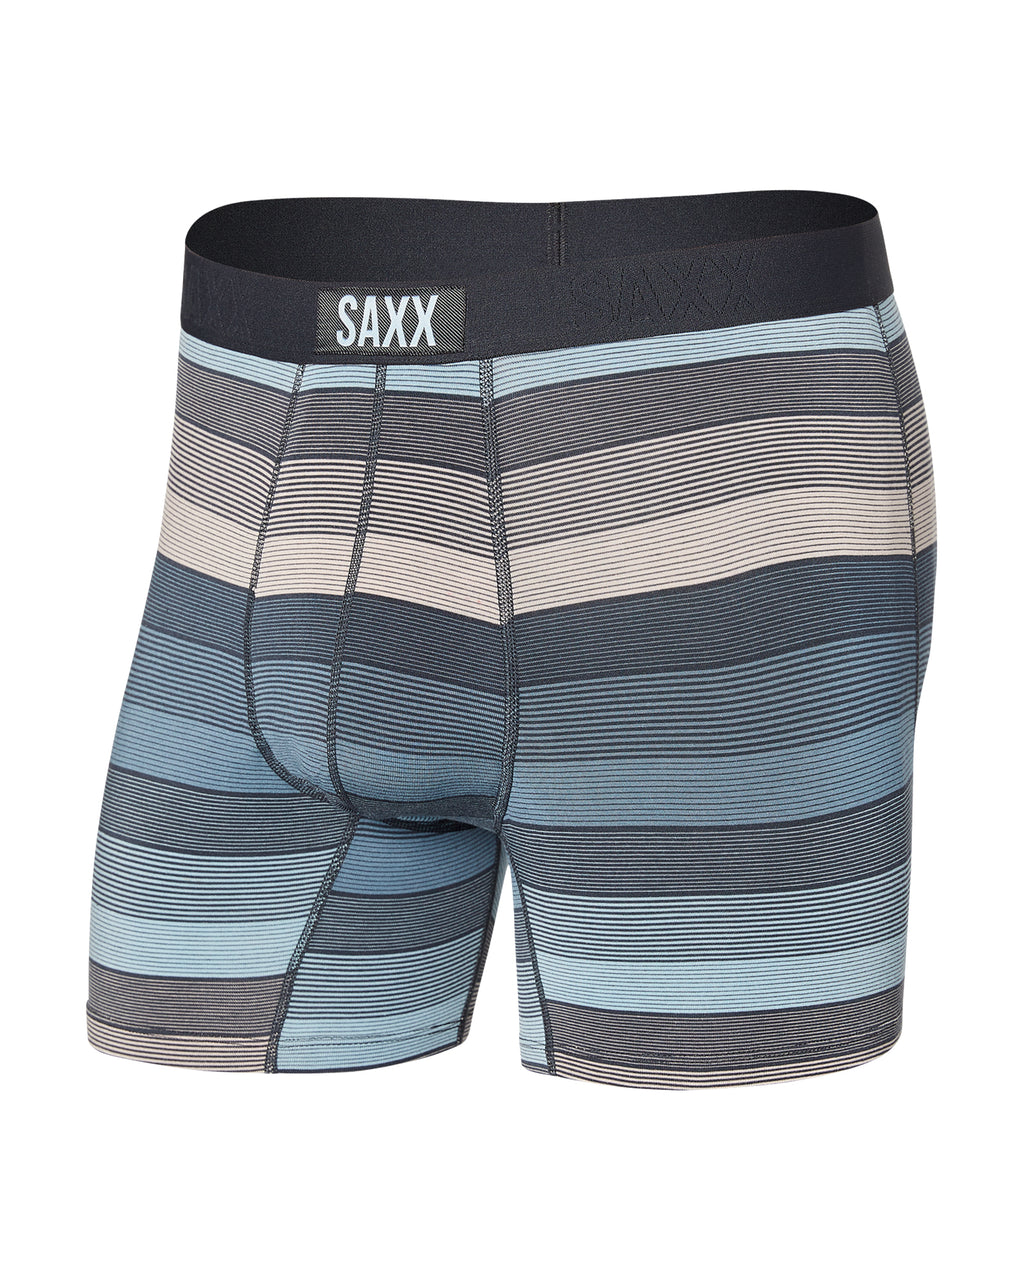 Vibe Super Soft Boxer Brief - SAXX, Luxury Designer Fashion